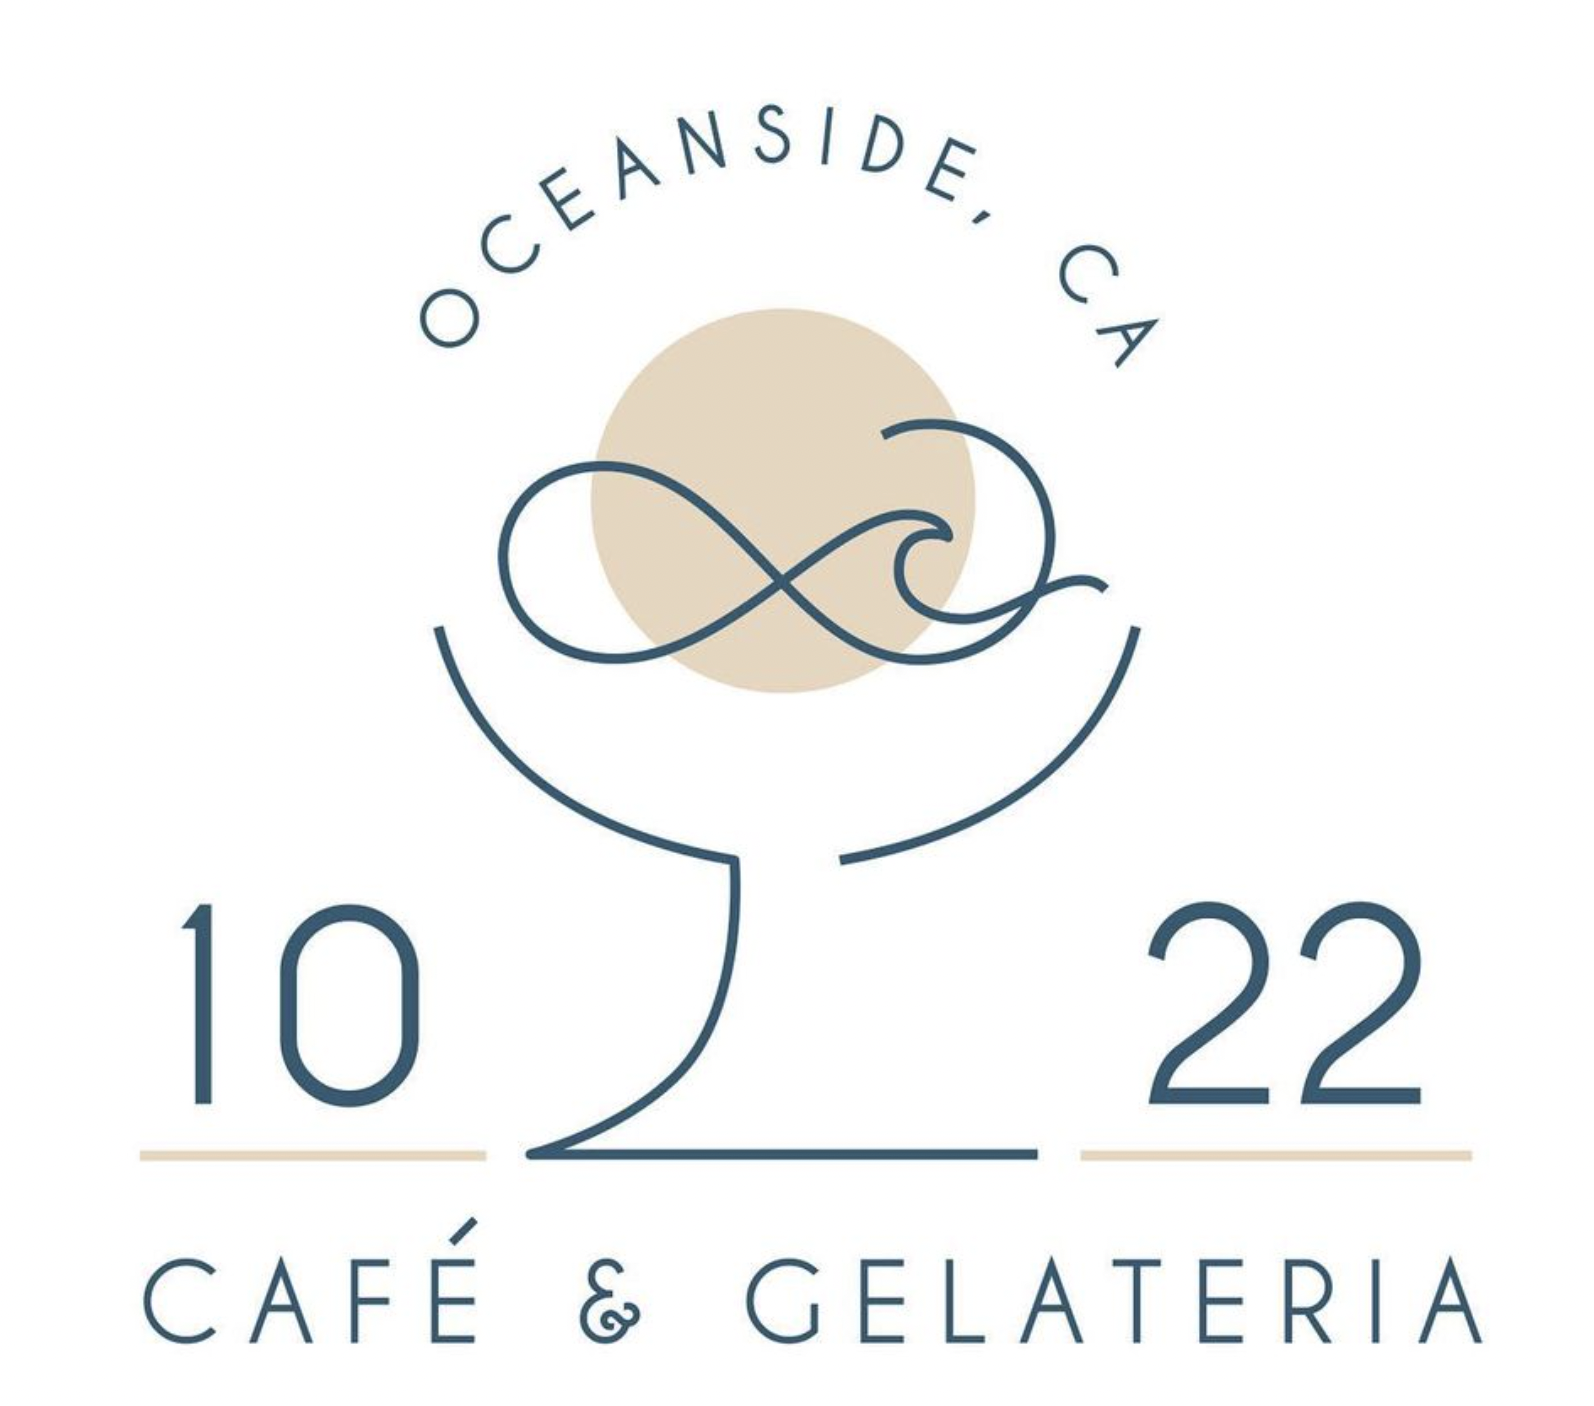 1022 Cafe & Gelateria